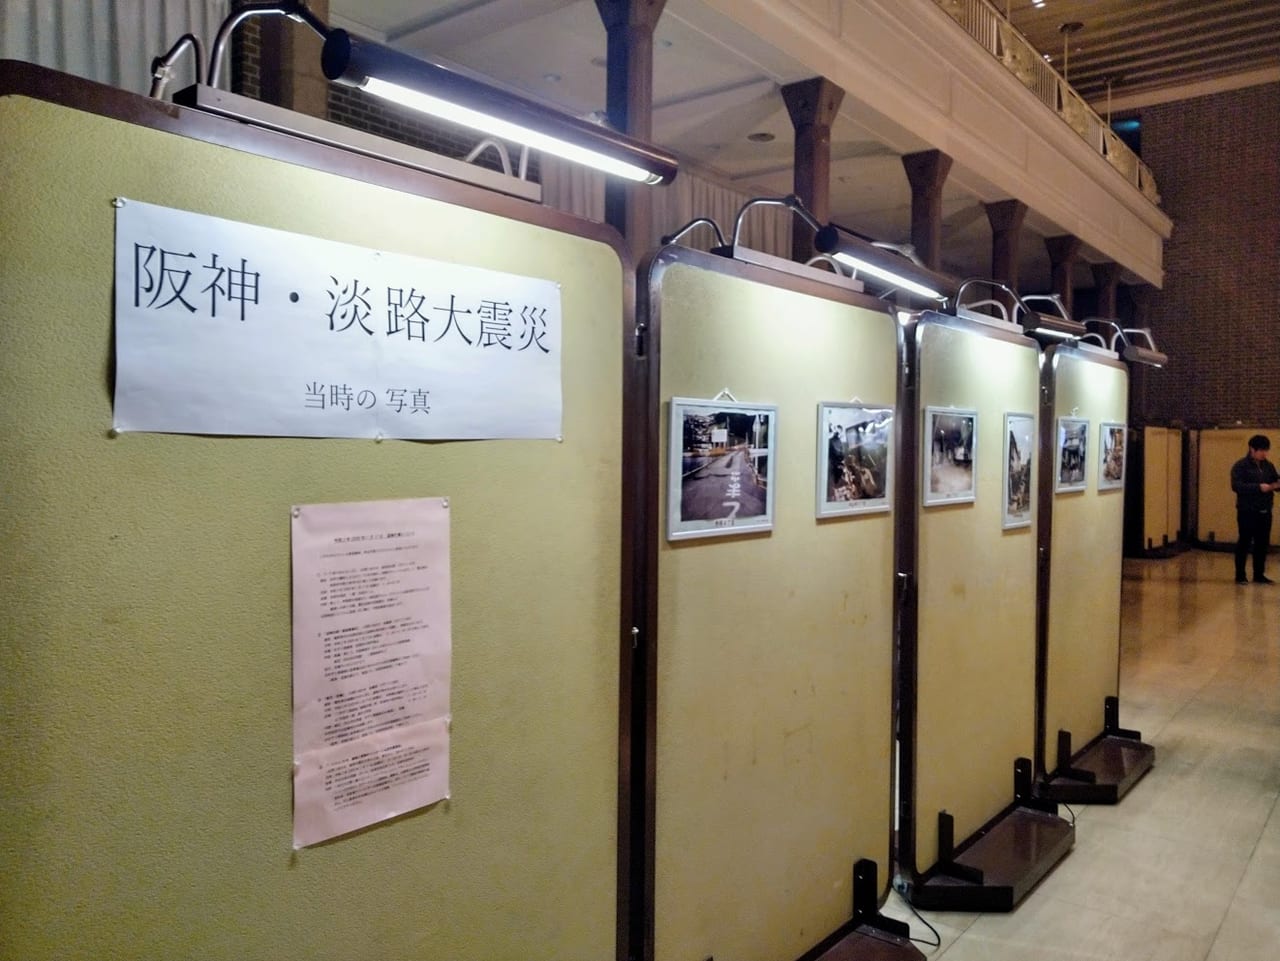 追悼行事では震災当時の写真が展示されています。